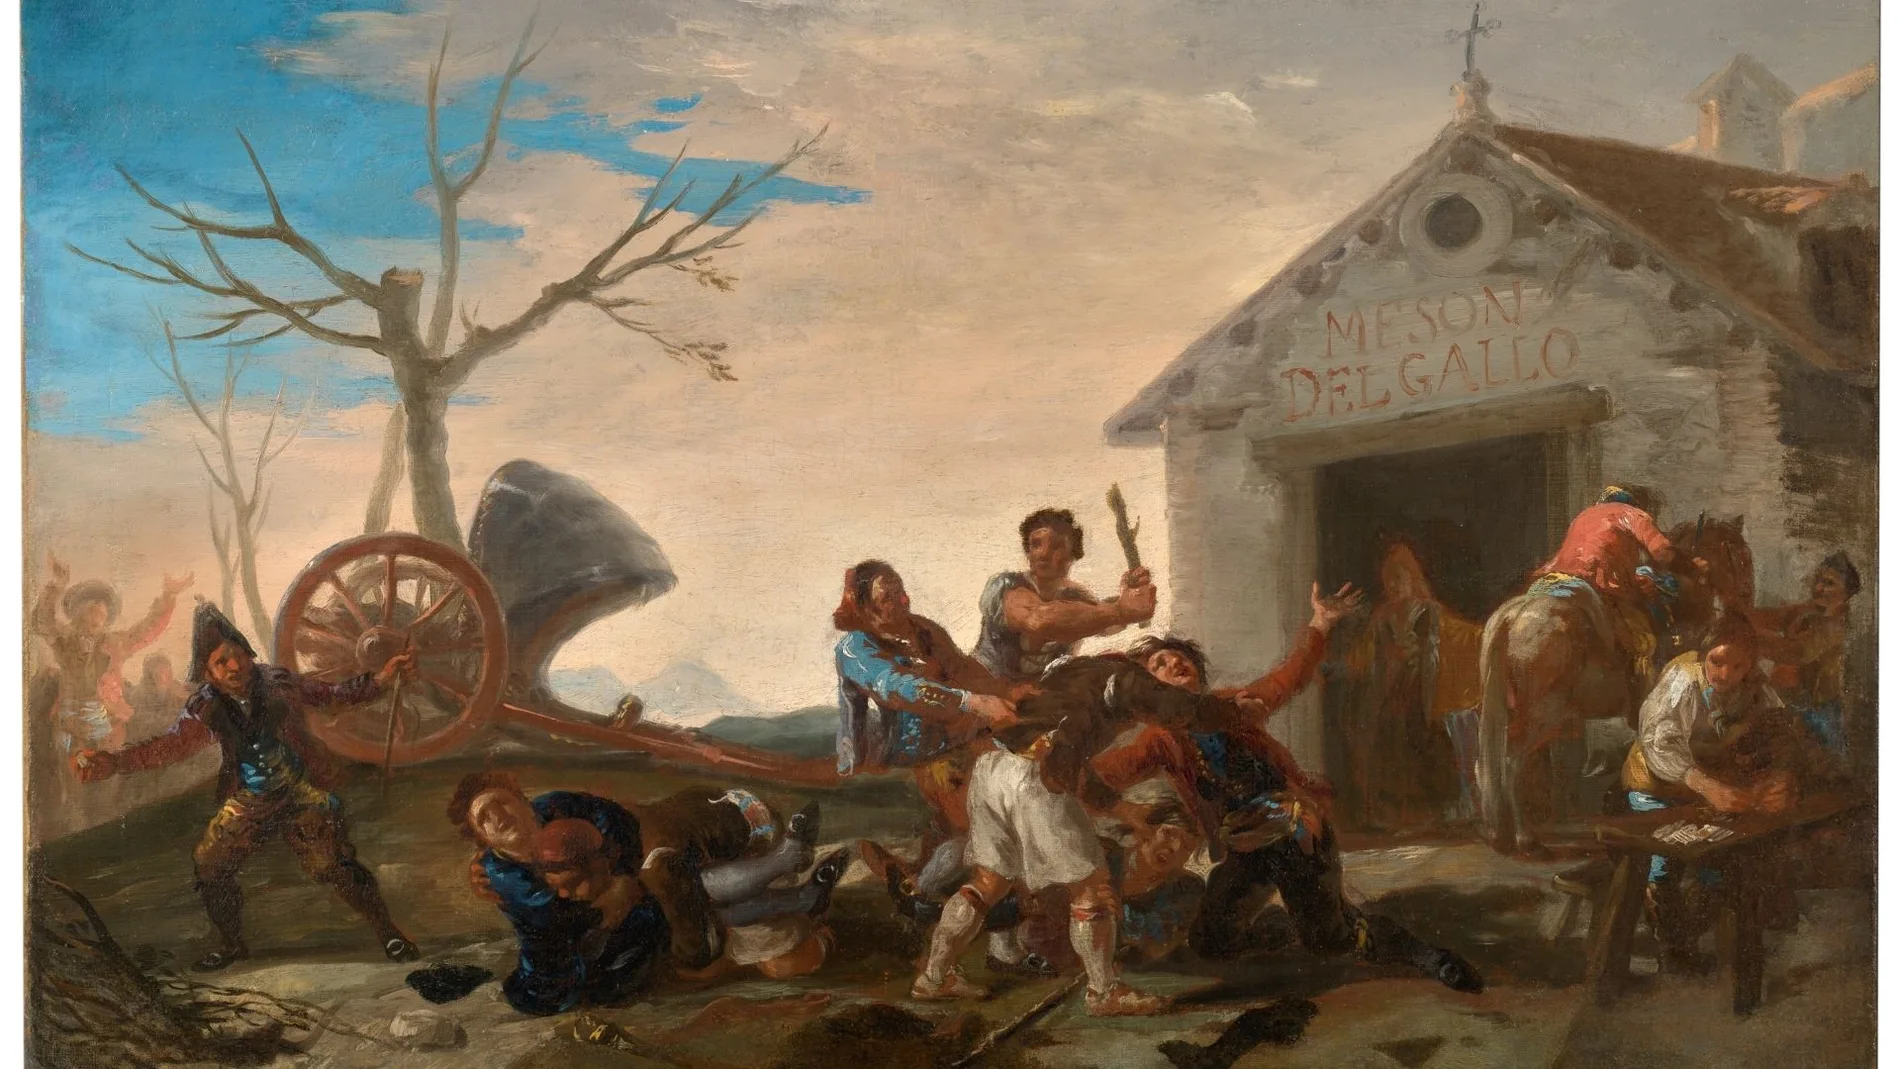 "La riña en el mesón del gallo", obra de Goya que está en el Museo del Prado procedente de Caja Madrid